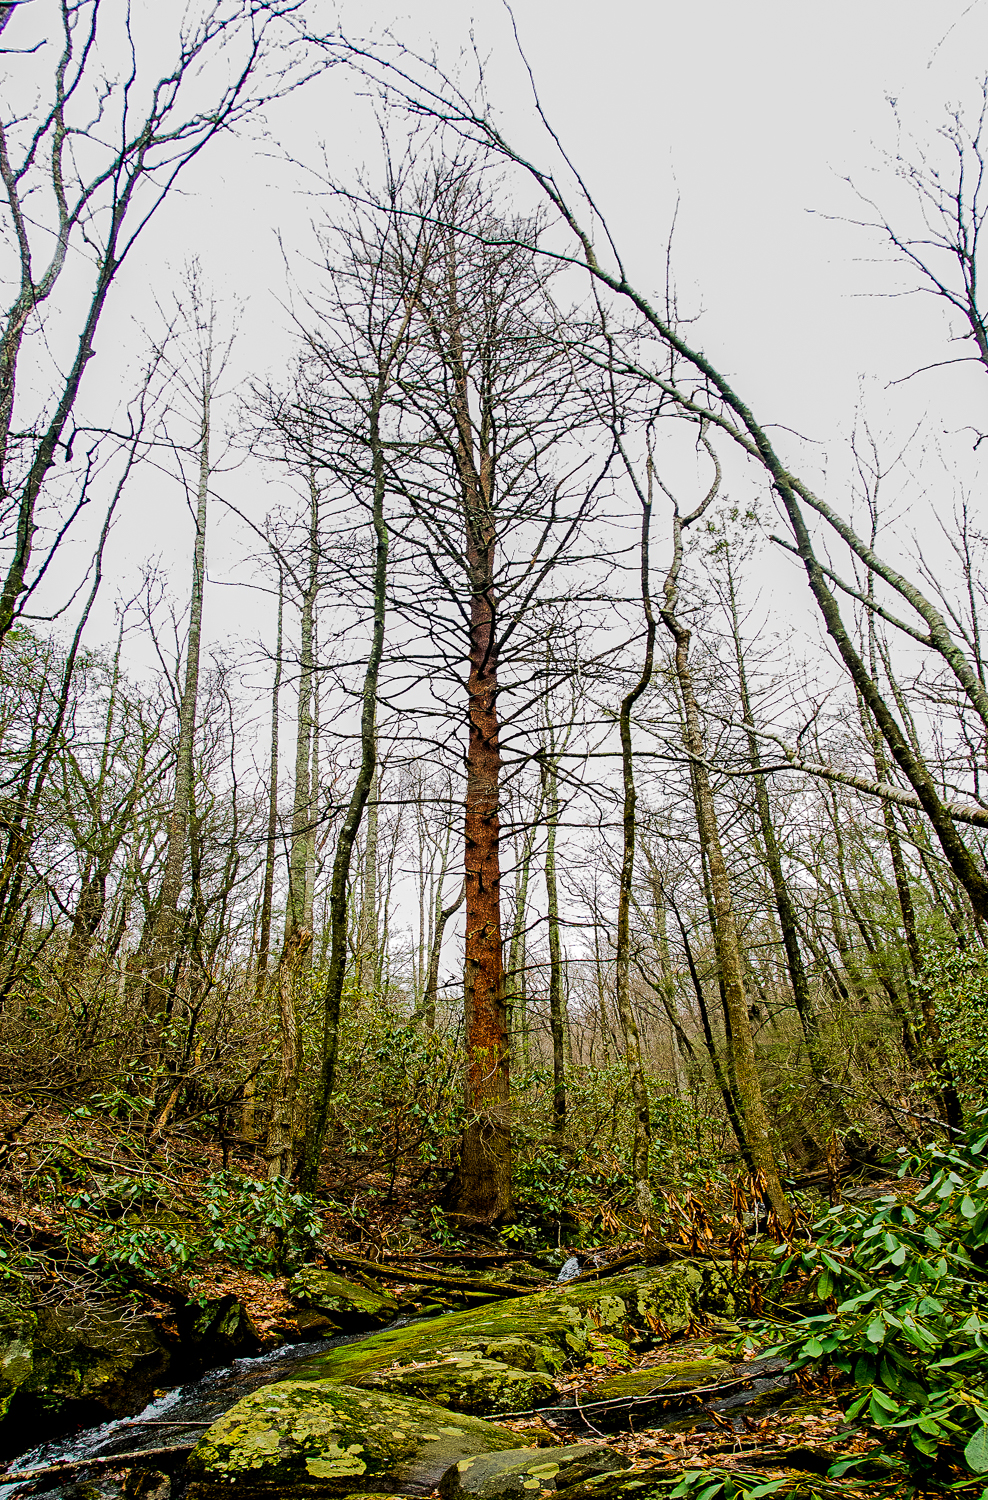 Eastern hemlock trees killed by hemlock woolly adelgid